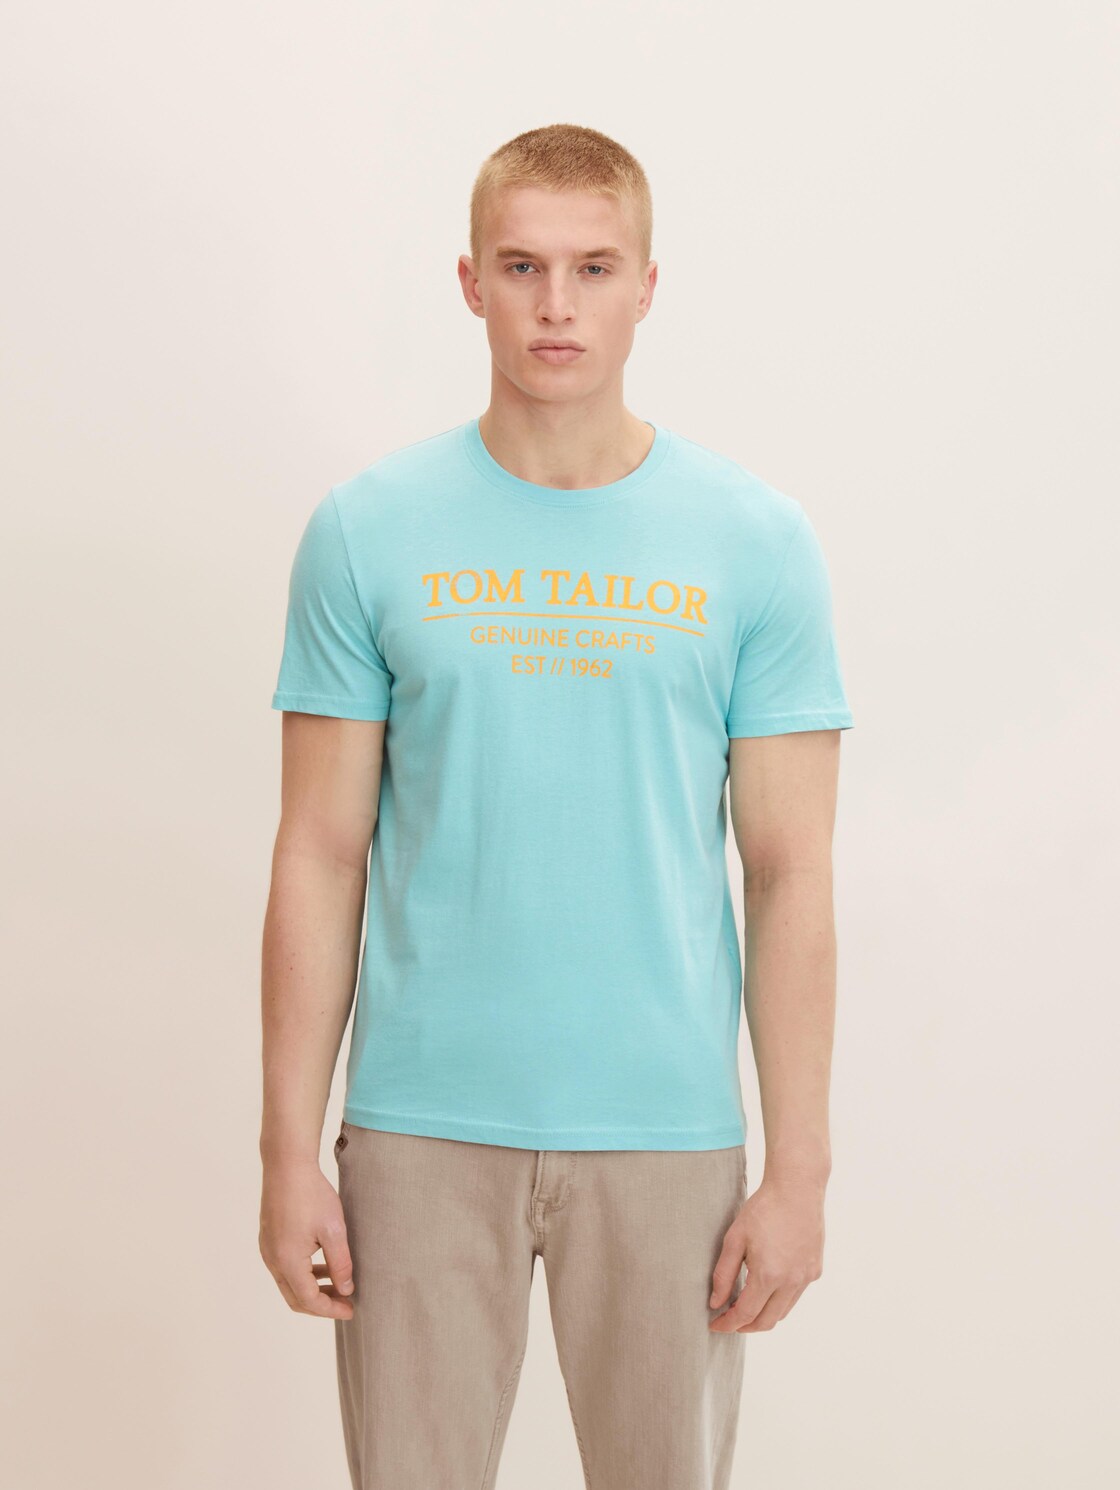 TOM TAILOR Herren T-Shirt mit Bio-Baumwolle, blau, Logo Print, Gr. L,